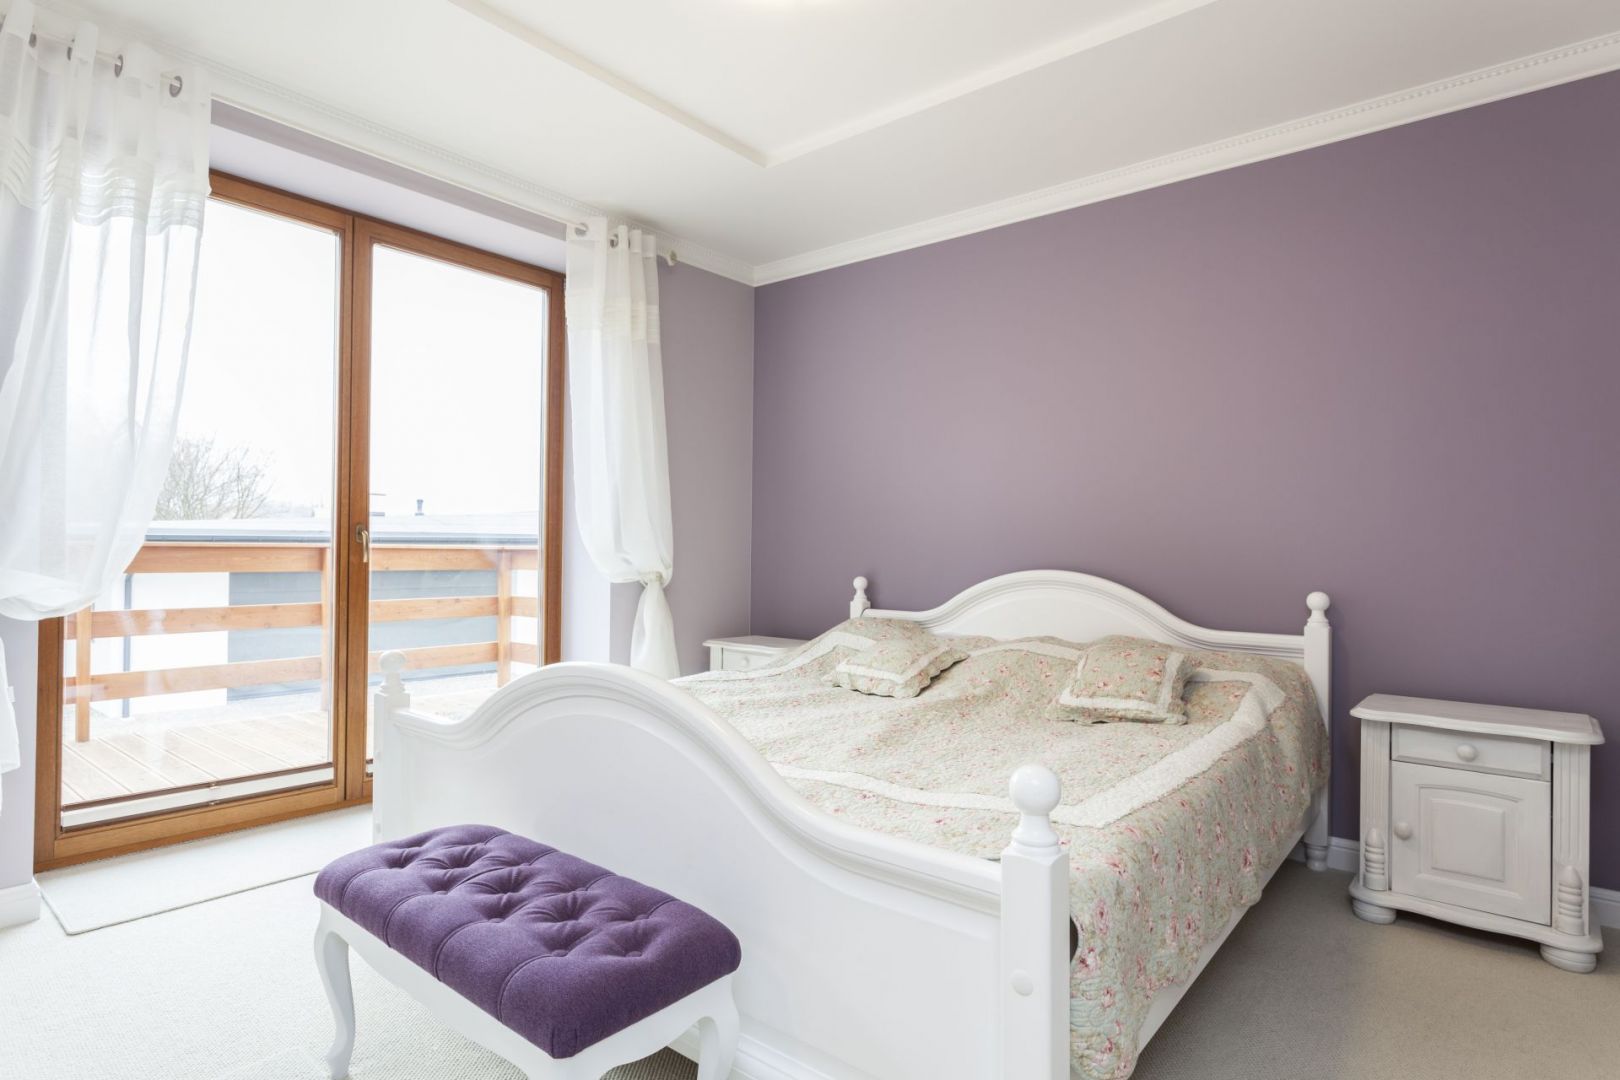 Fiolety w sypialni to gwarancja udanego wypoczynku. Połączone z bielą dodają wnętrzu romantycznego klimatu. Fot. Home Sweet Home